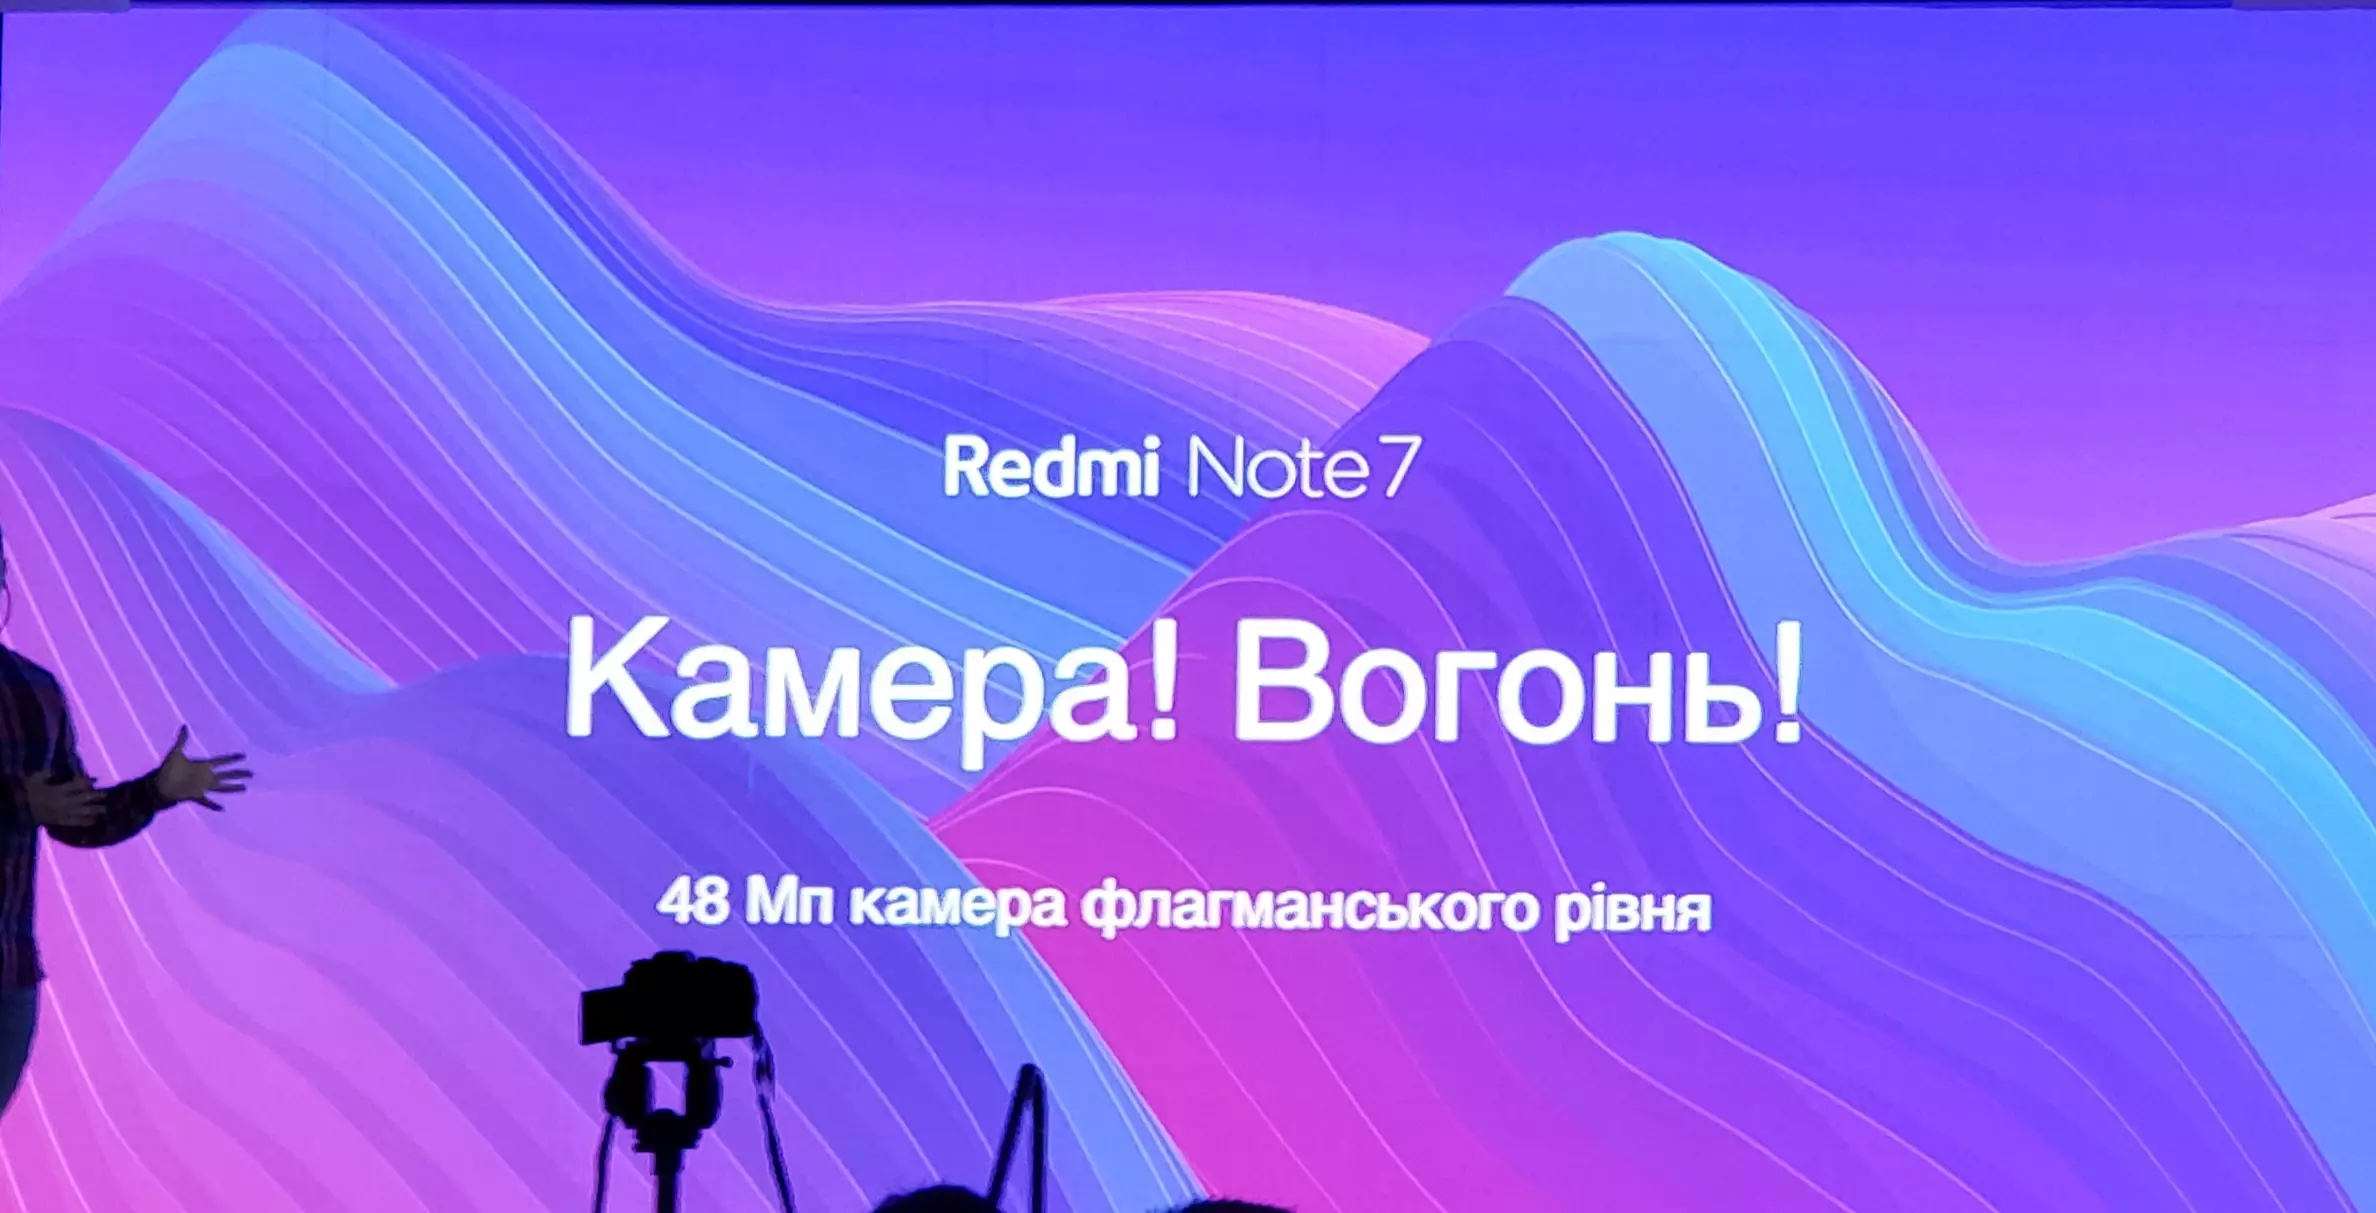 Слоган Redmi Note 7